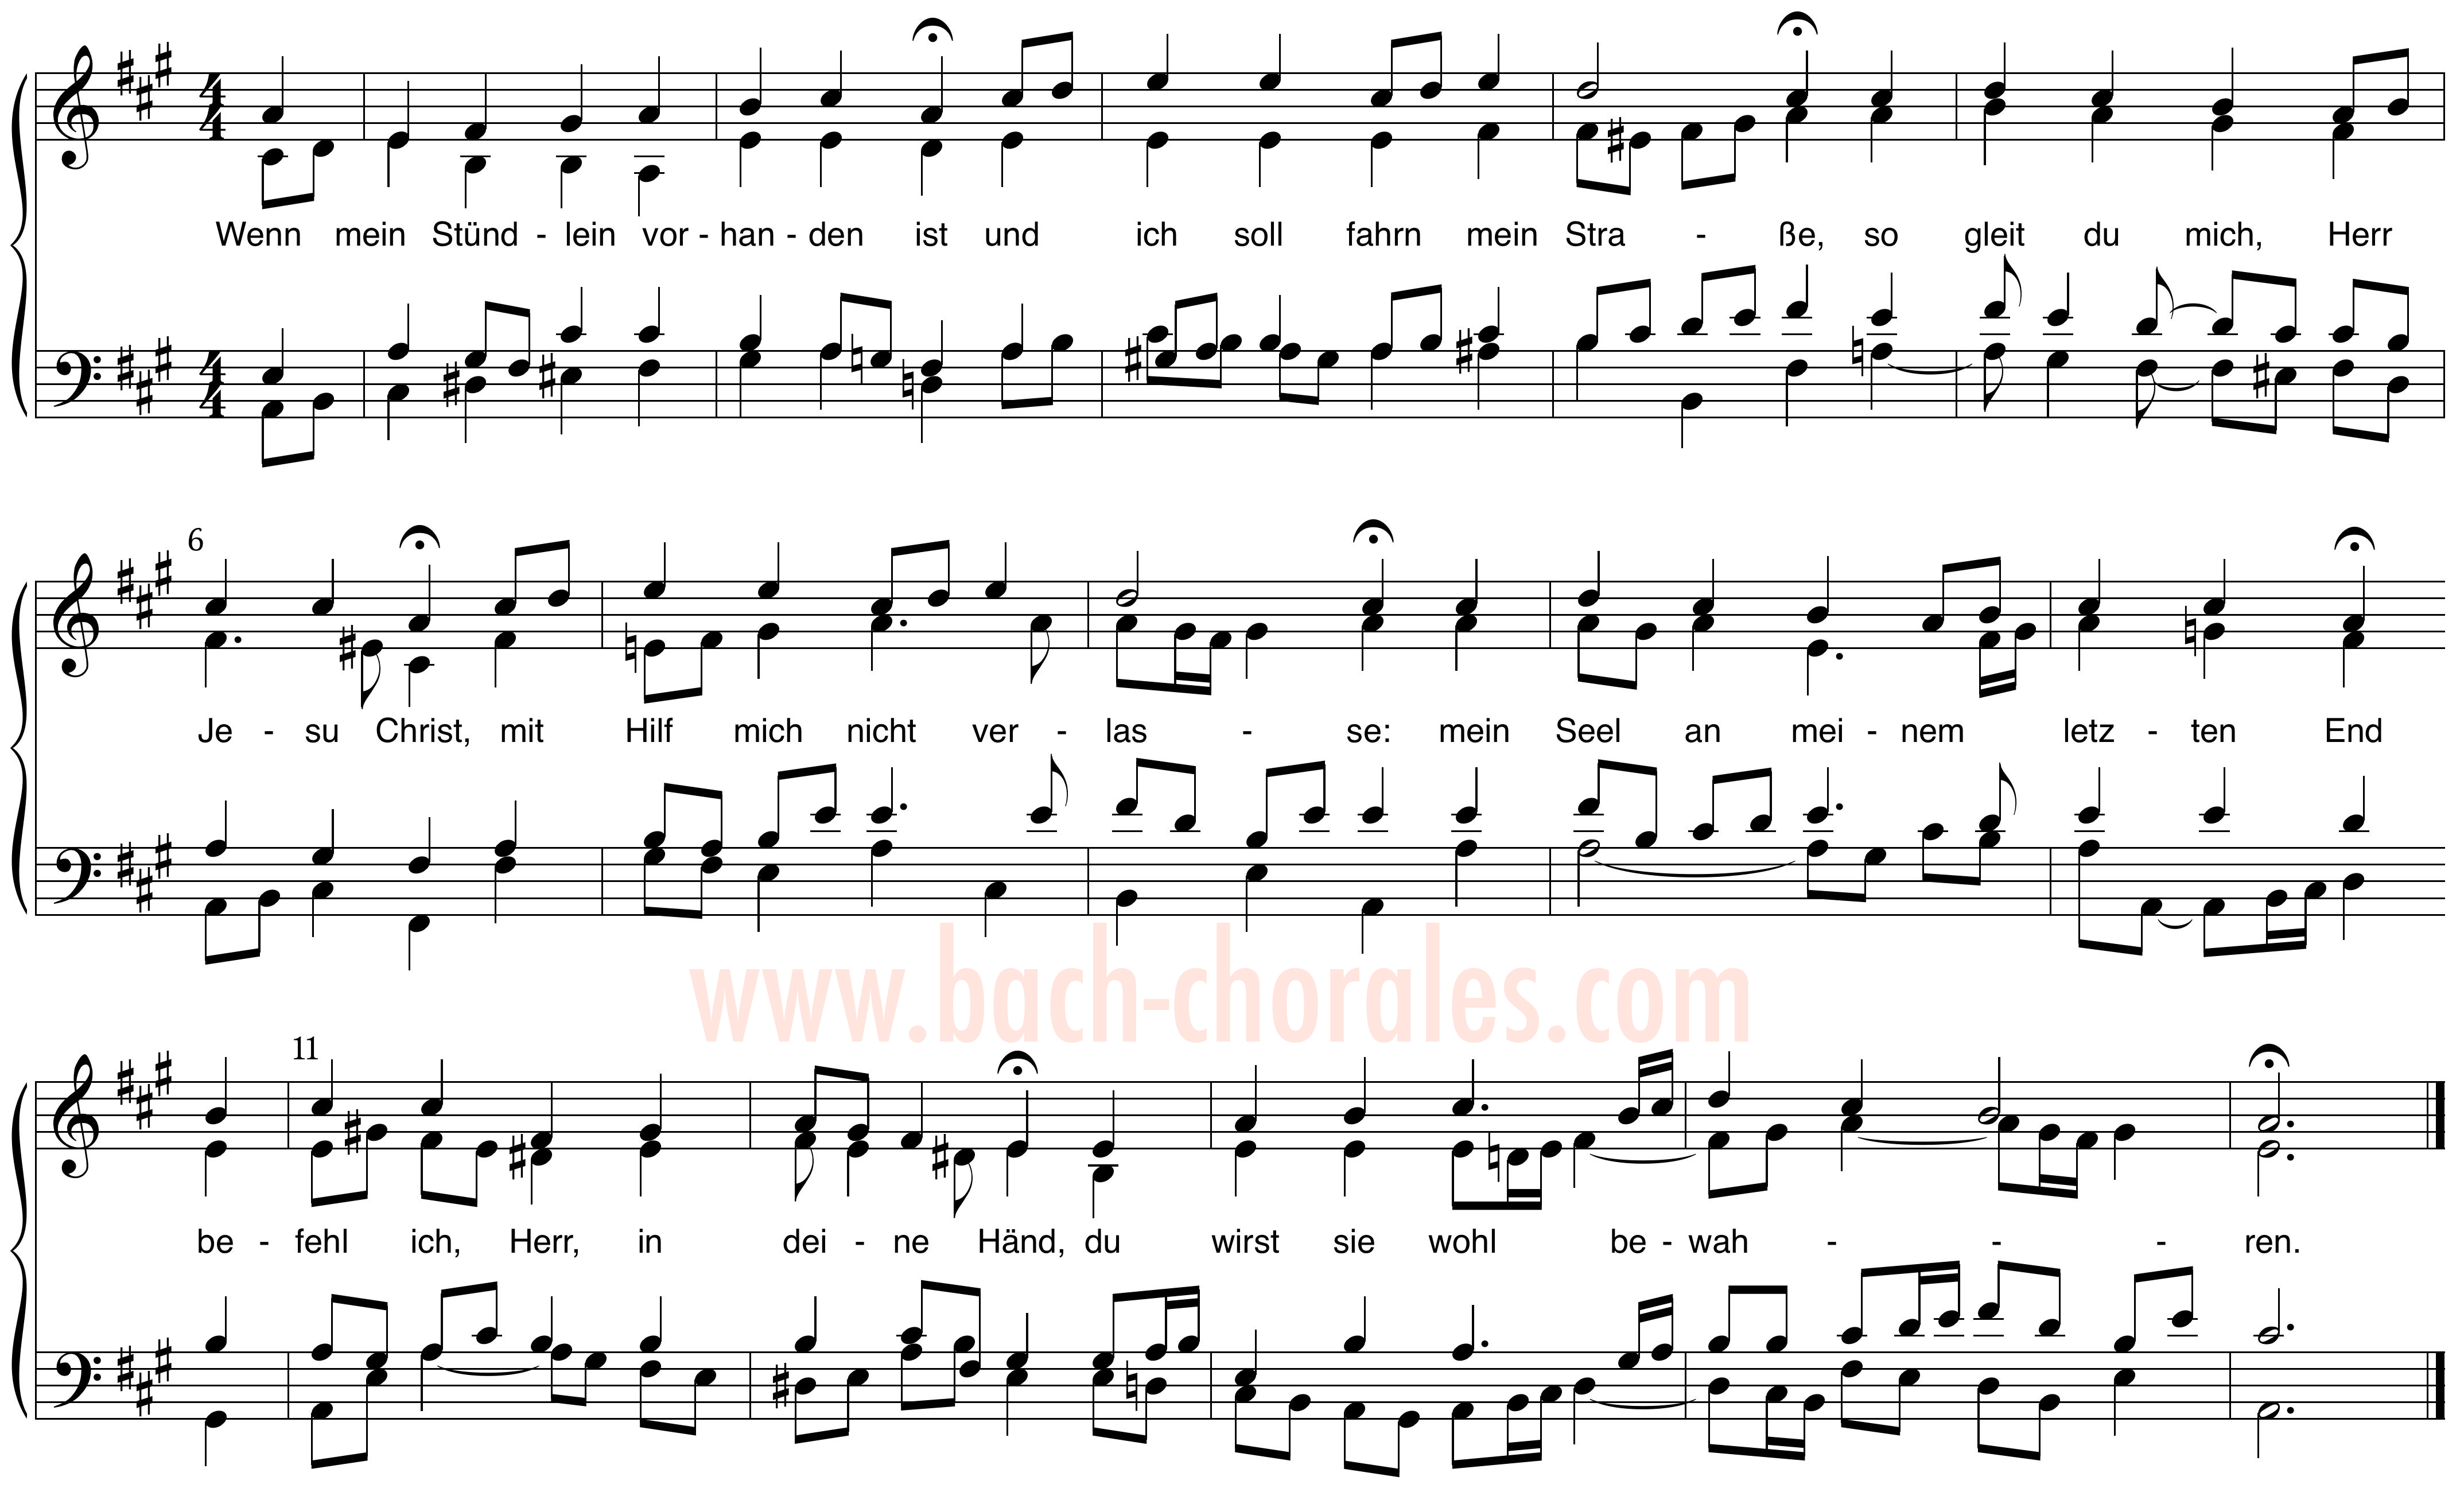 notenbeeld BWV 430 op https://www.bach-chorales.com/